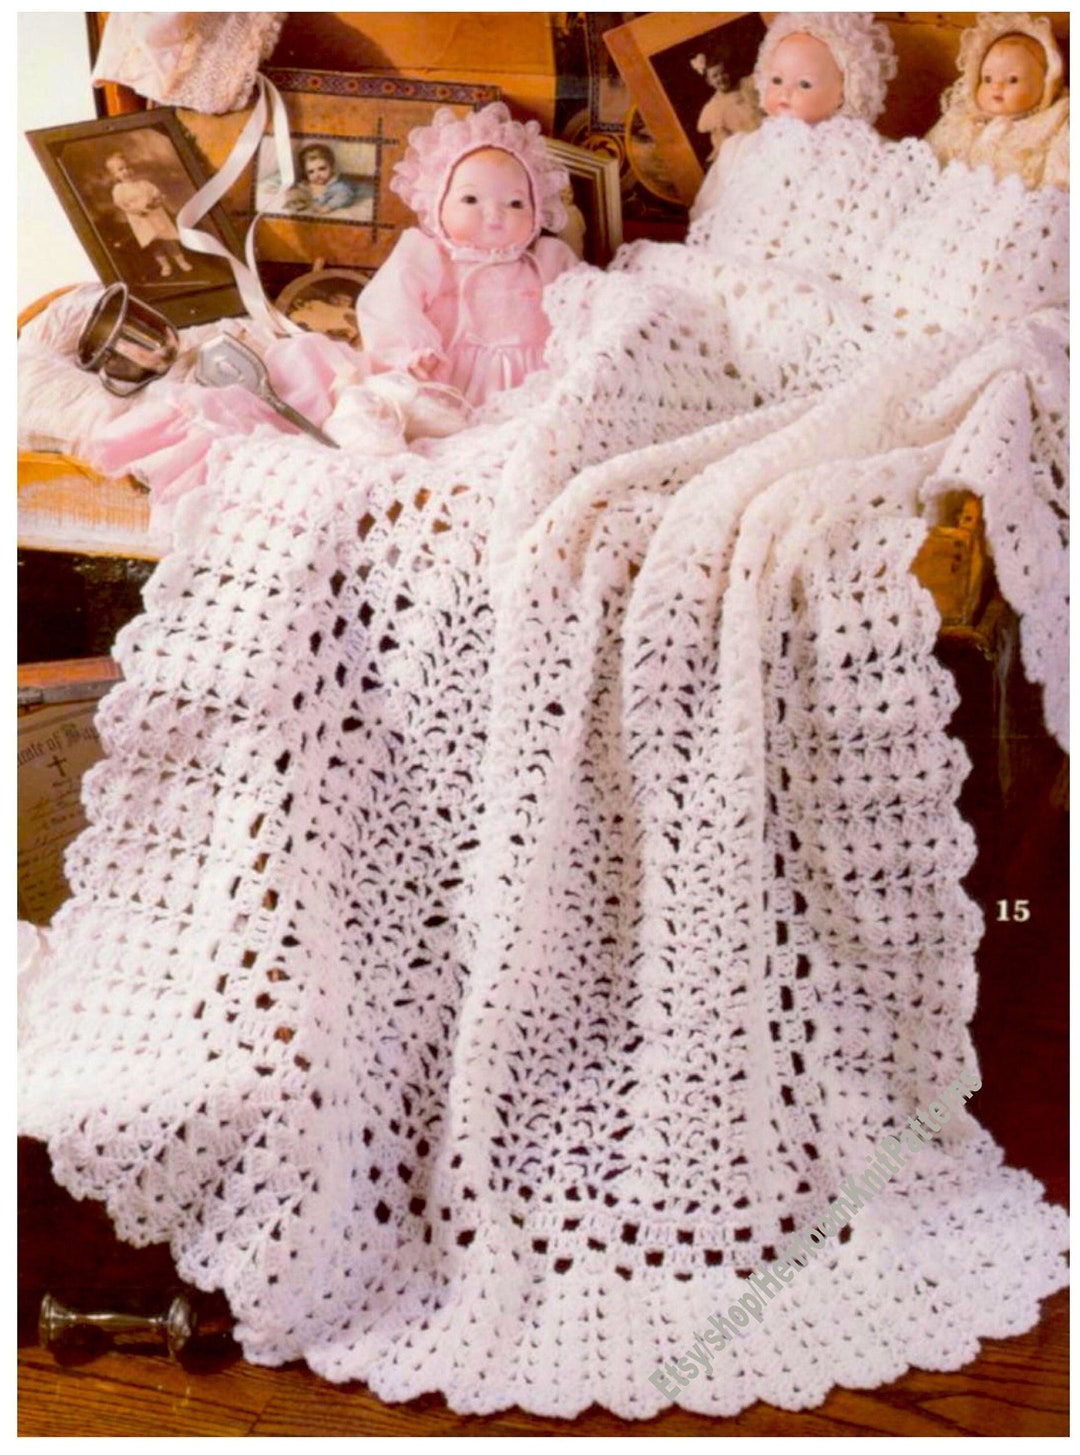 Crochet Pattern Books Rock Me Gently Baby Afghans & Receiving Blankets  Edgings